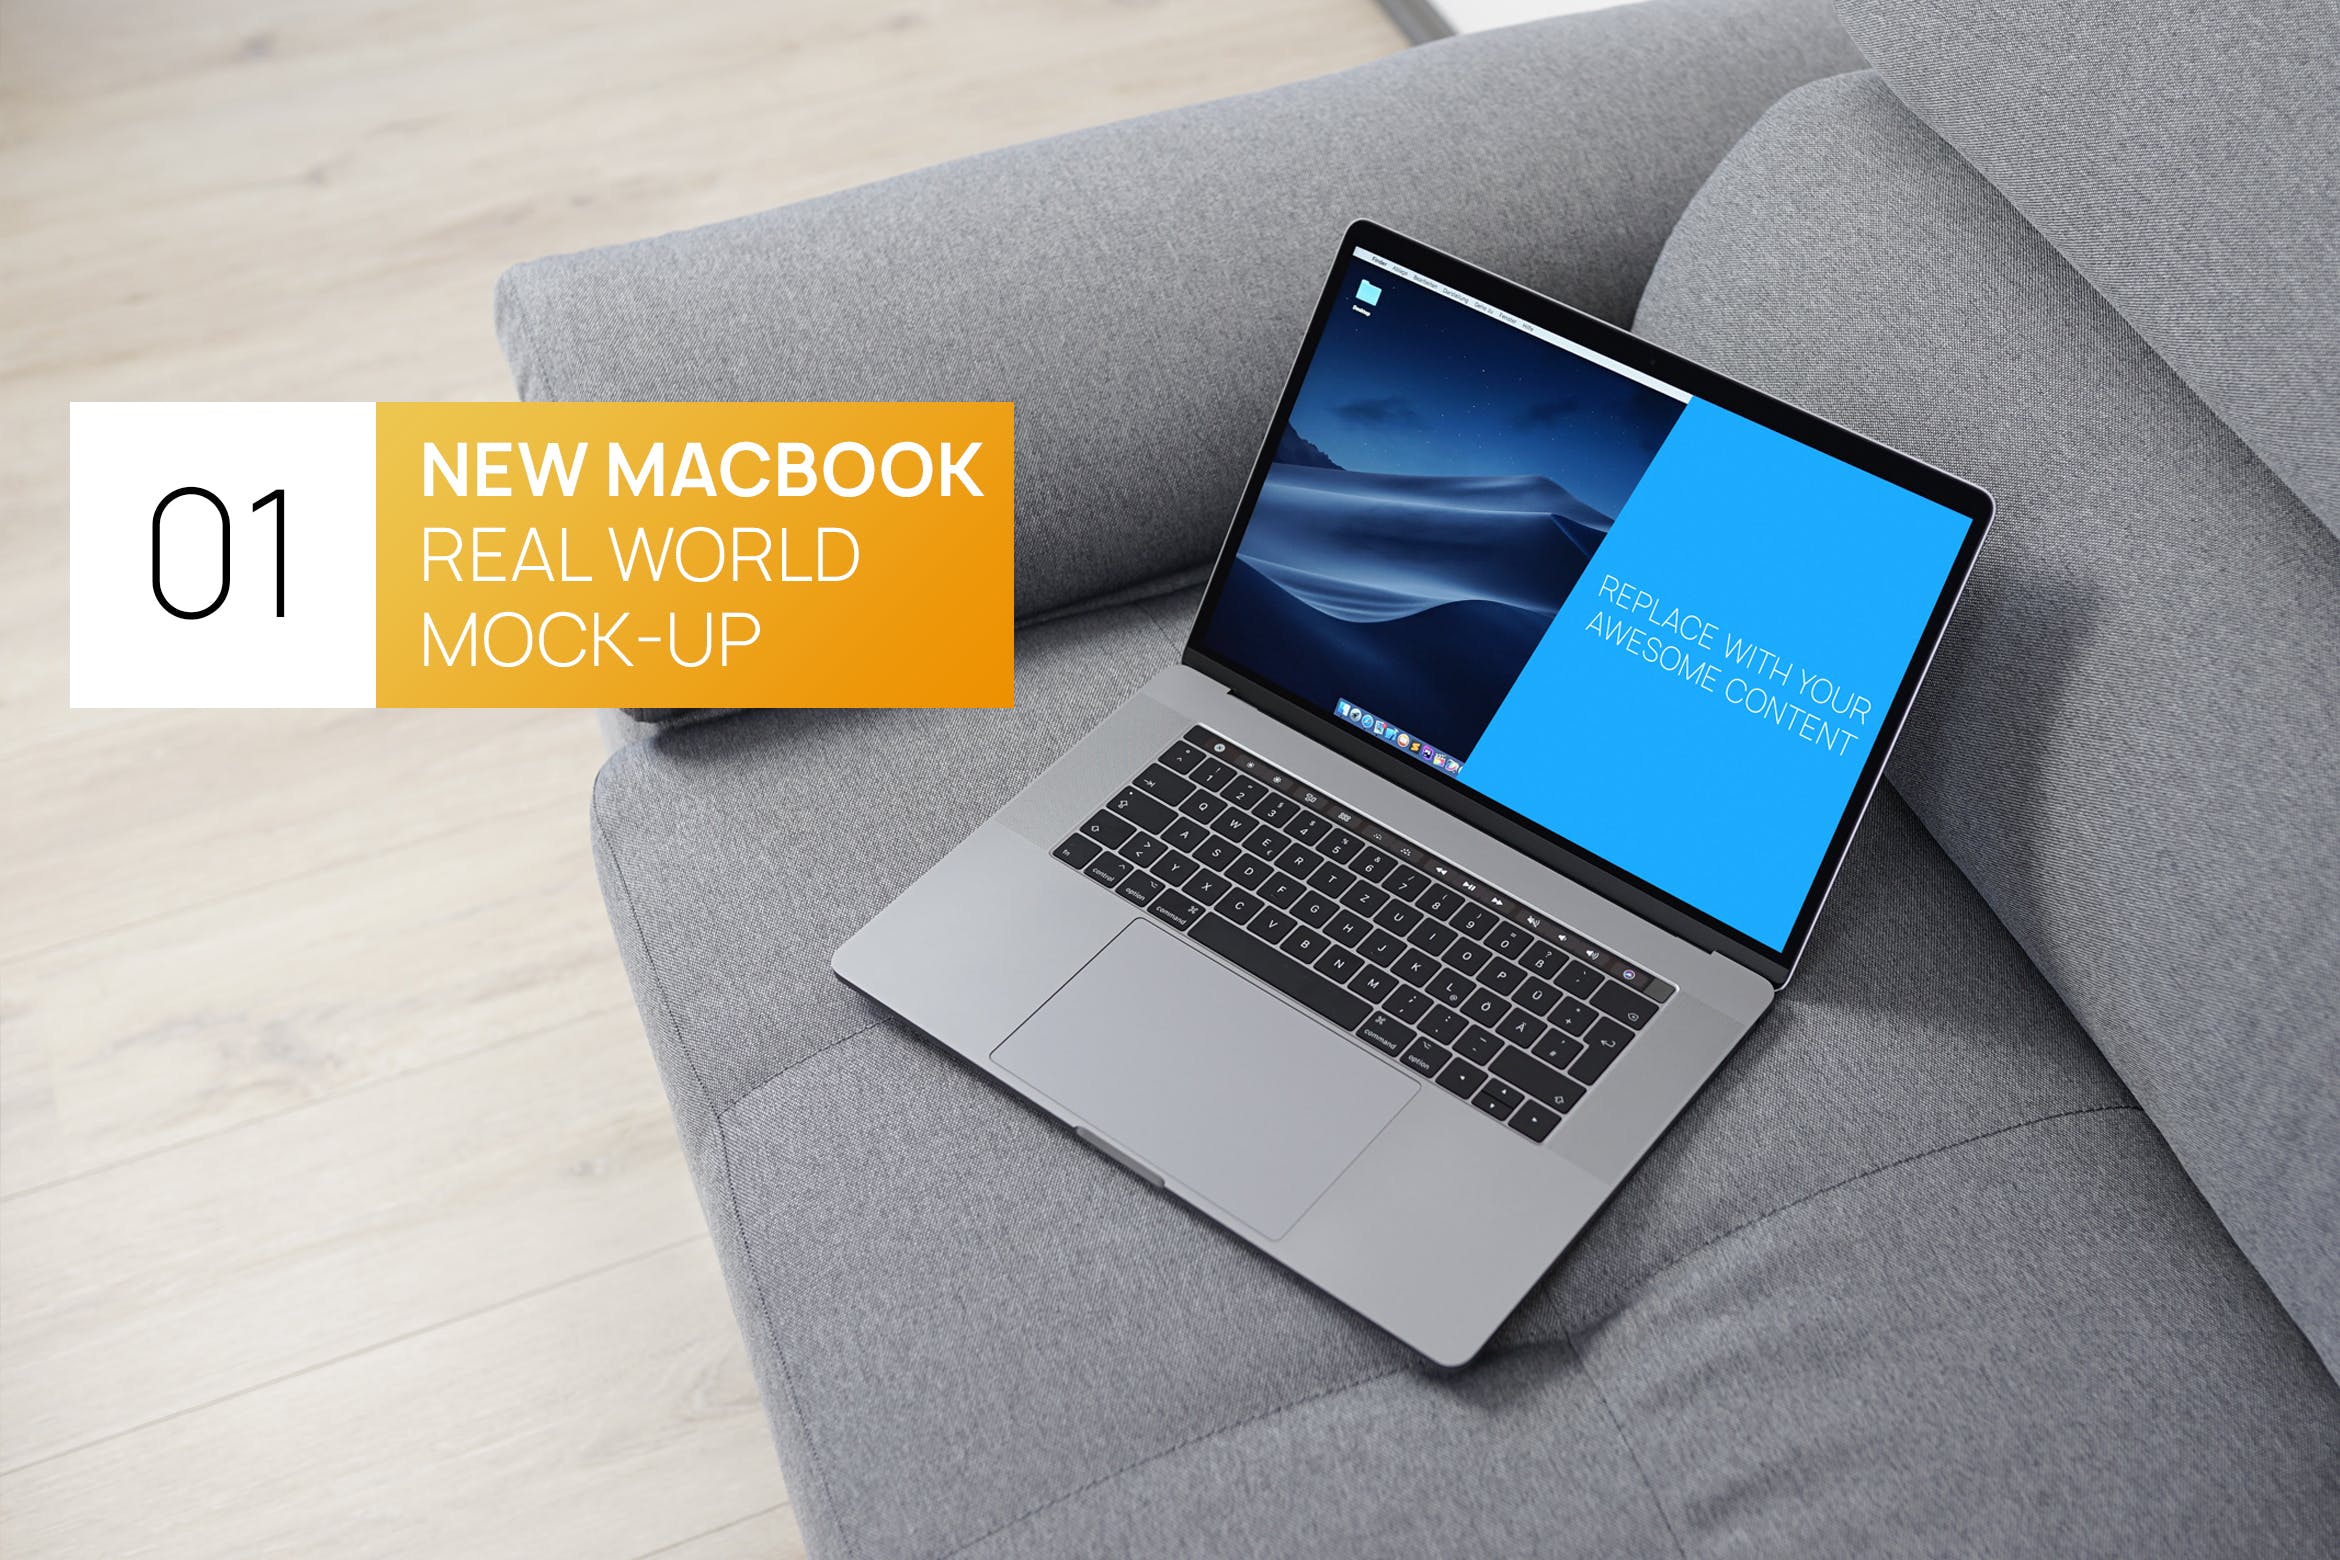 布艺沙发上的MacBook Pro电脑非凡图库精选样机 New MacBook Pro Touchbar Real World Mock-up插图